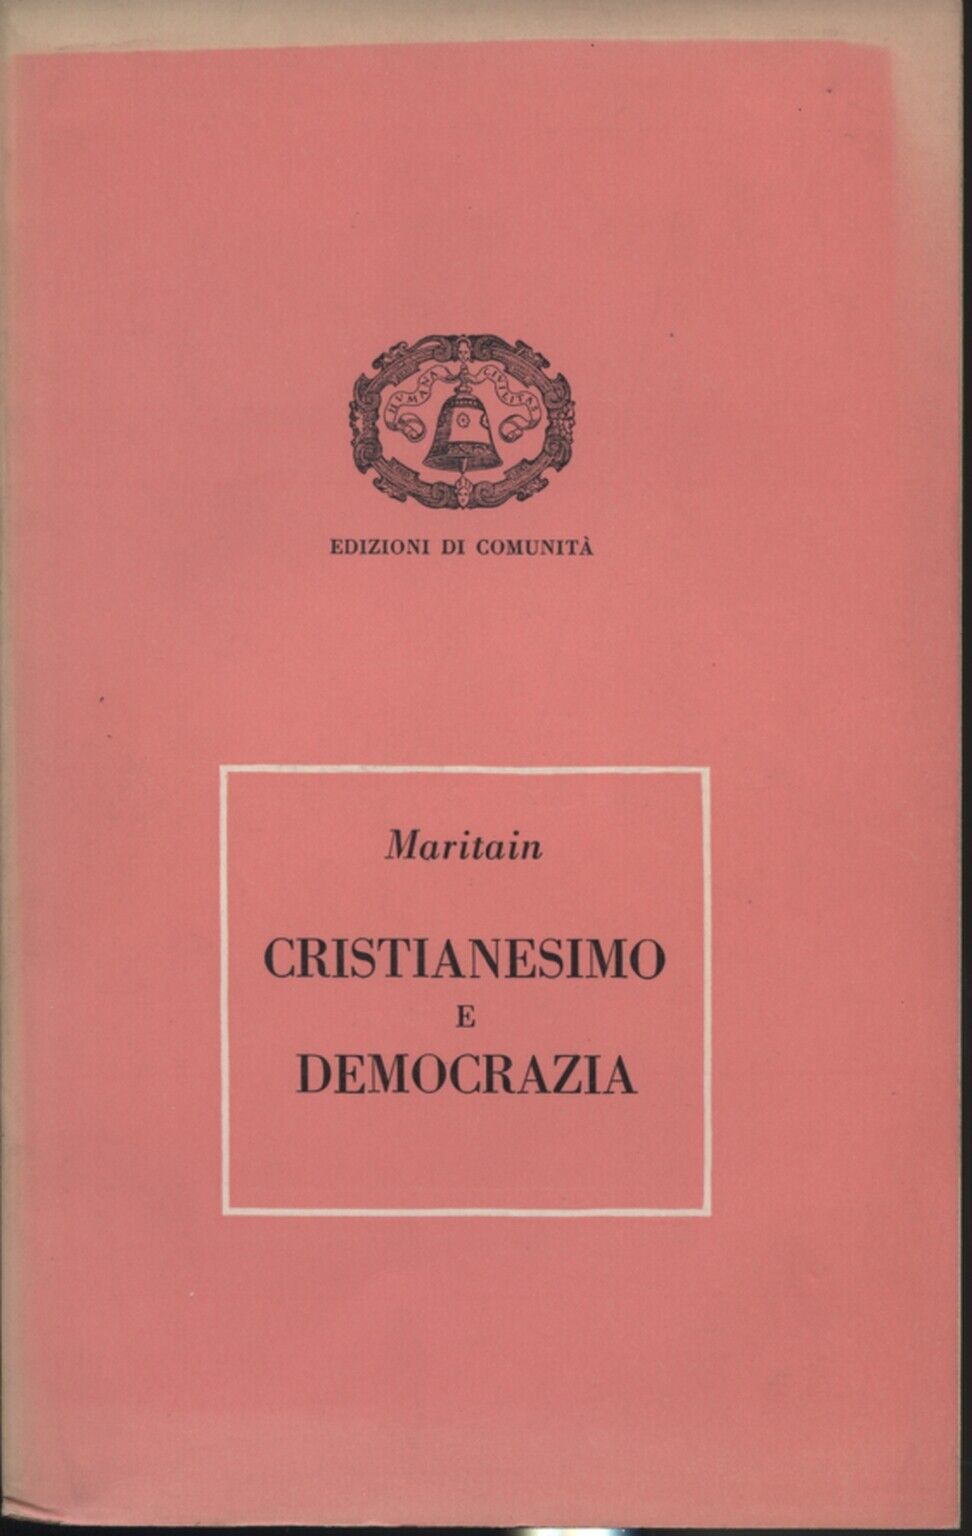  Cristianesimo e Democrazia  di Jacques Maritain,  1953,  Edizioni Di Comunit?